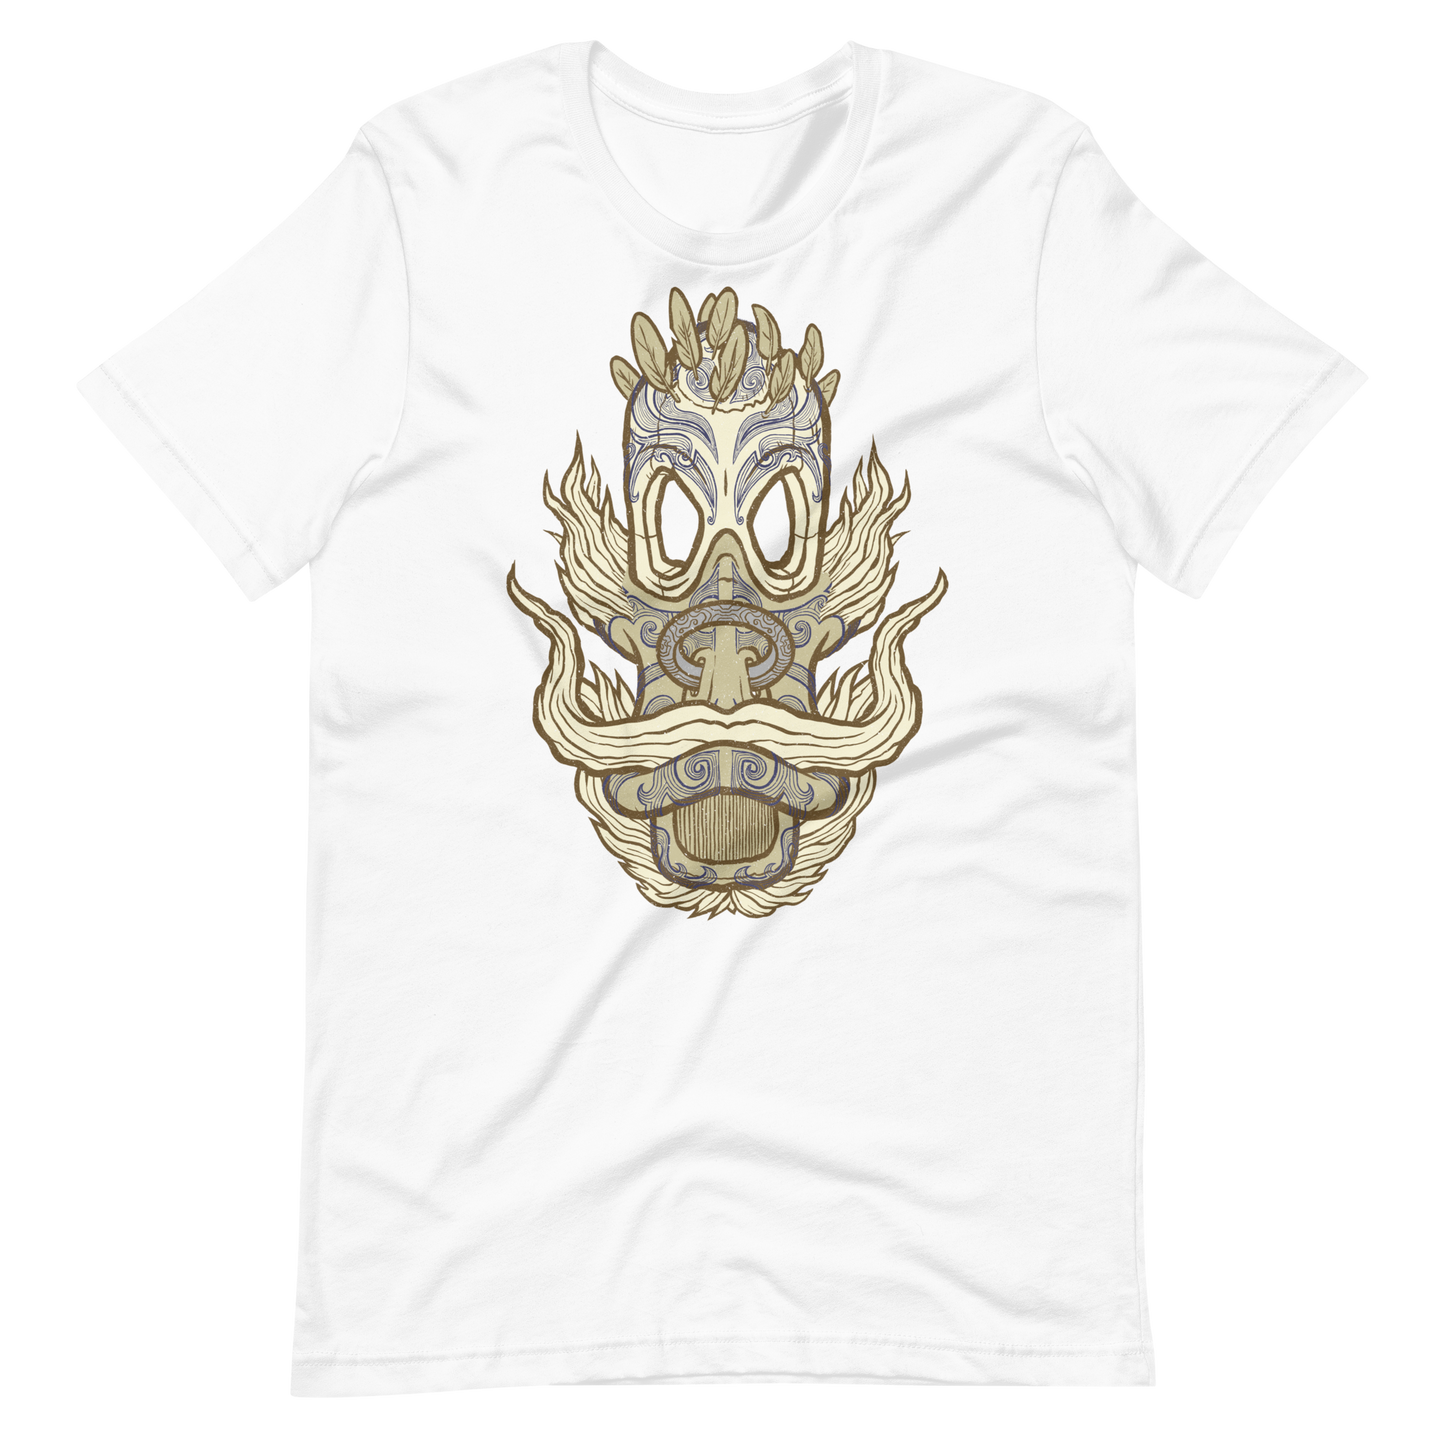 No 006 Wierd Duck Skull collection t-shirt